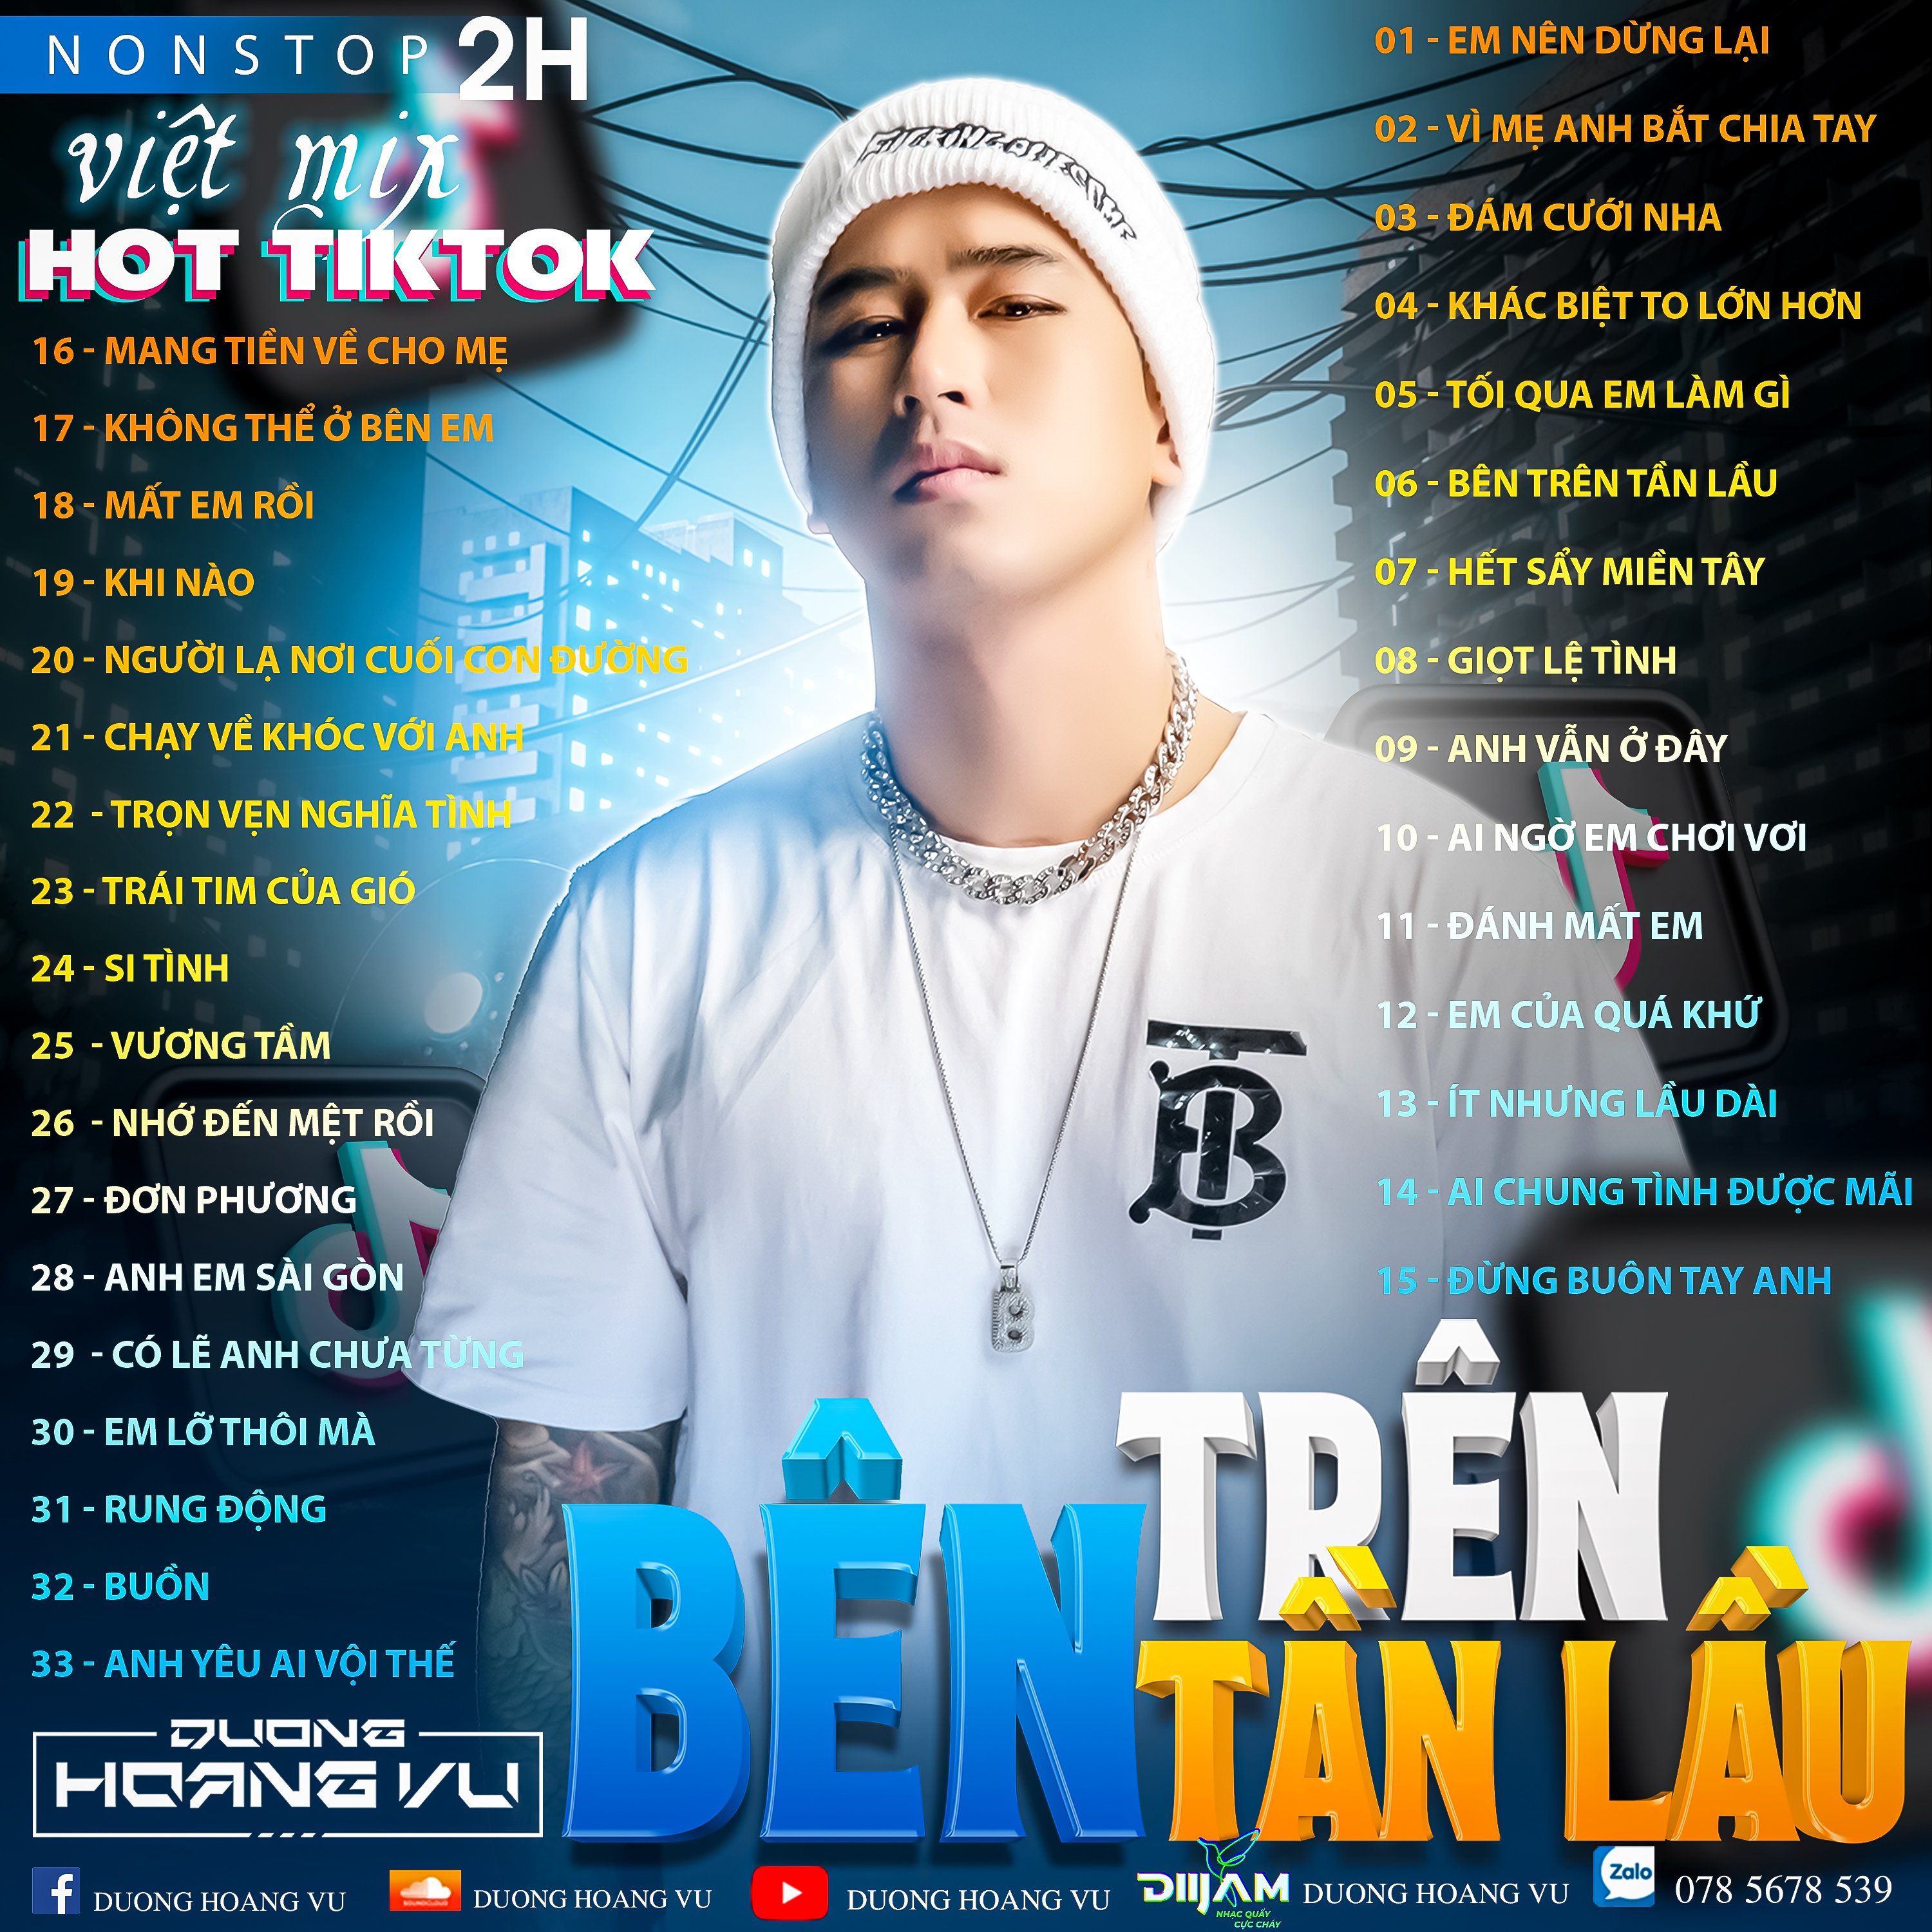 ਡਾਉਨਲੋਡ ਕਰੋ (Demo ) Nst Việt Mix Hot tiktok 2h - 2022 - DJ Dương Hoàng Vũ Mix Mua Full IB Zalo 078.5678.539